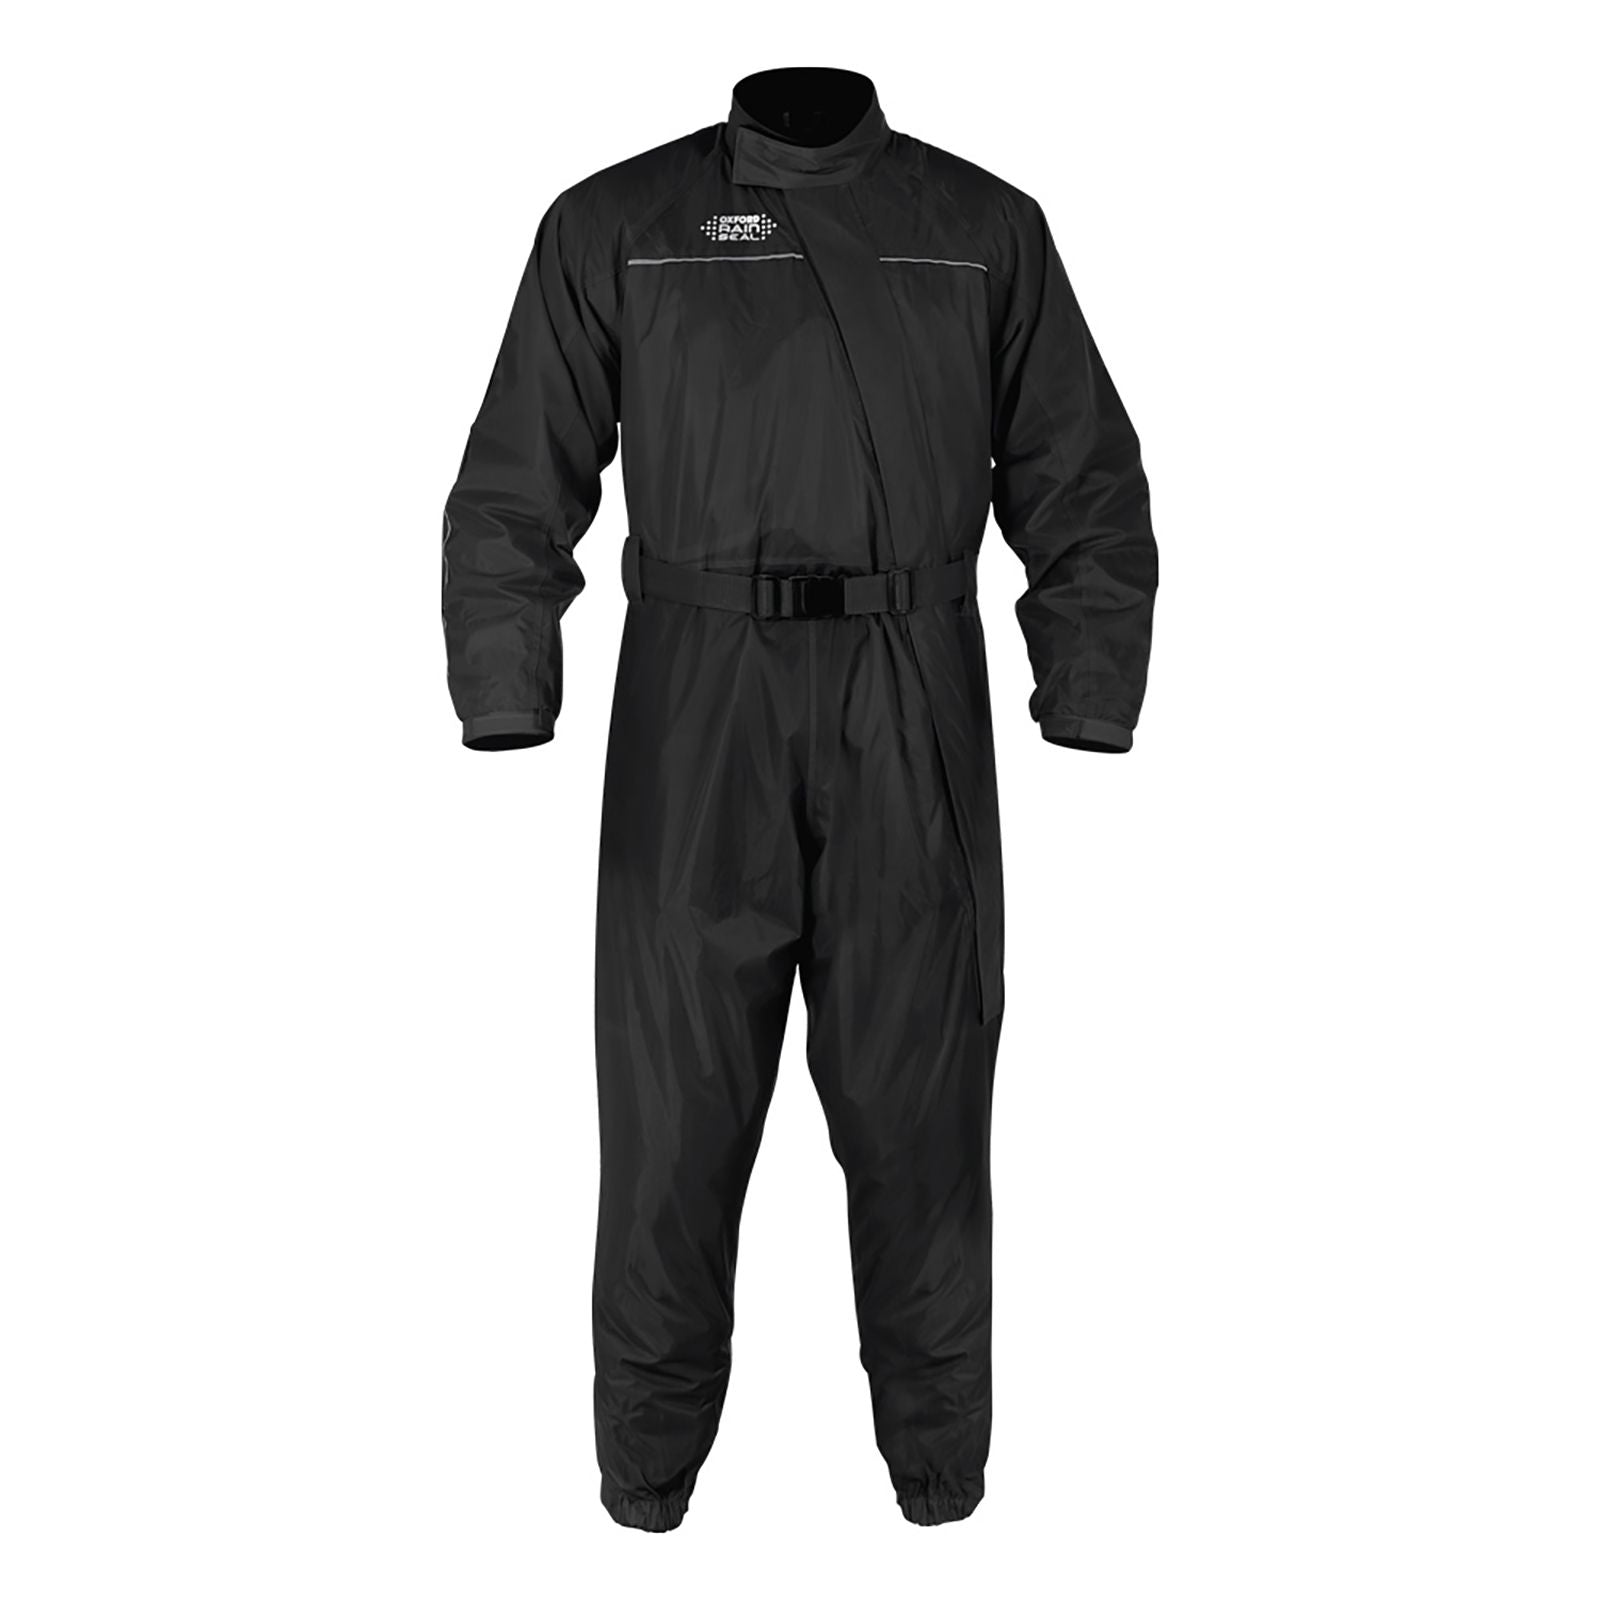 New OXFORD Rainseal Rain Suit - Black - Medium #OXRM300M